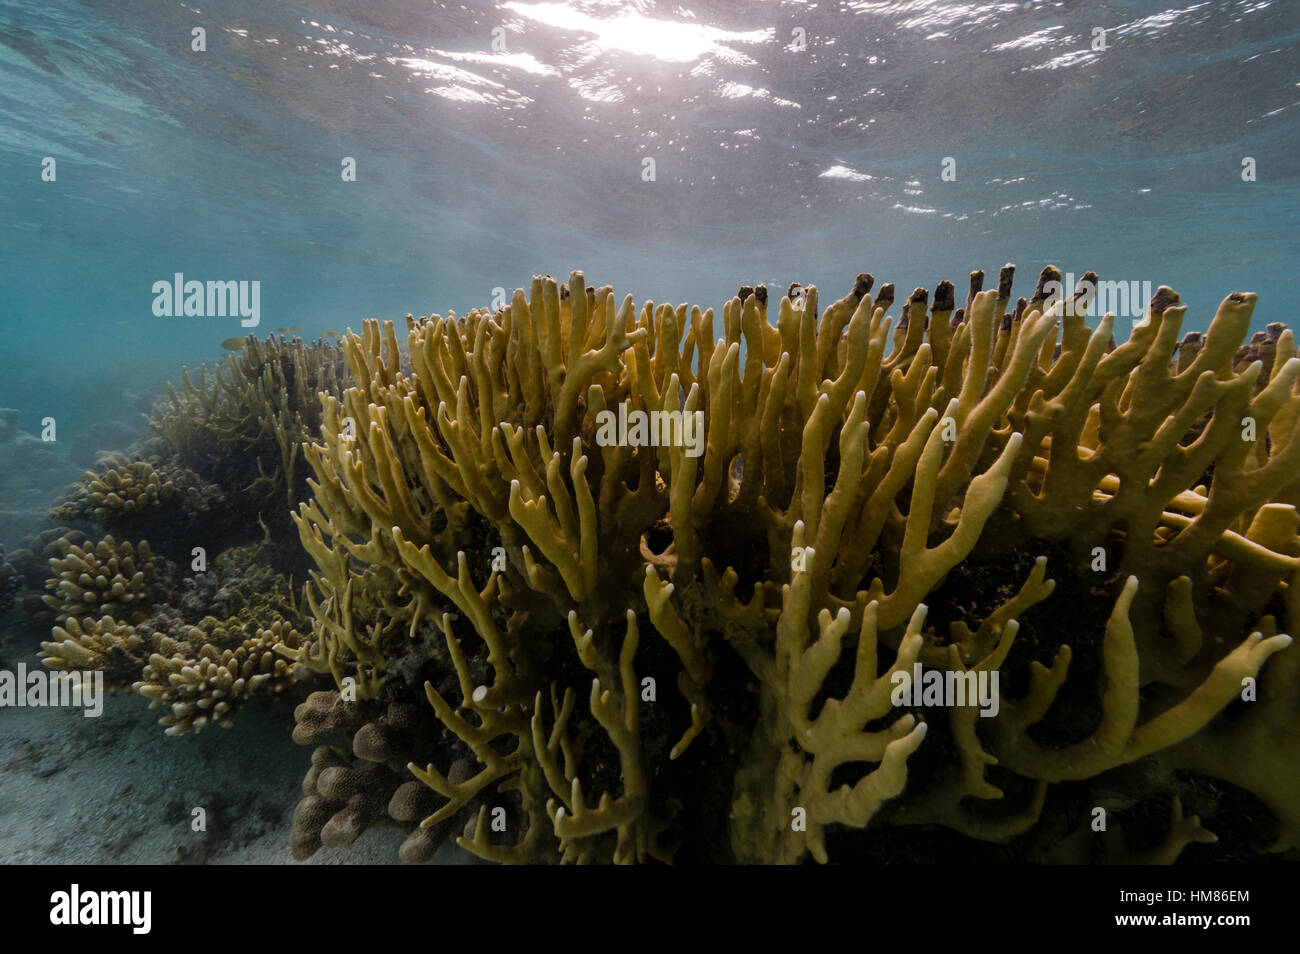 La lumière du soleil pommelé tombant sur une colonie de corail de feu dans les mers tropicales. Banque D'Images